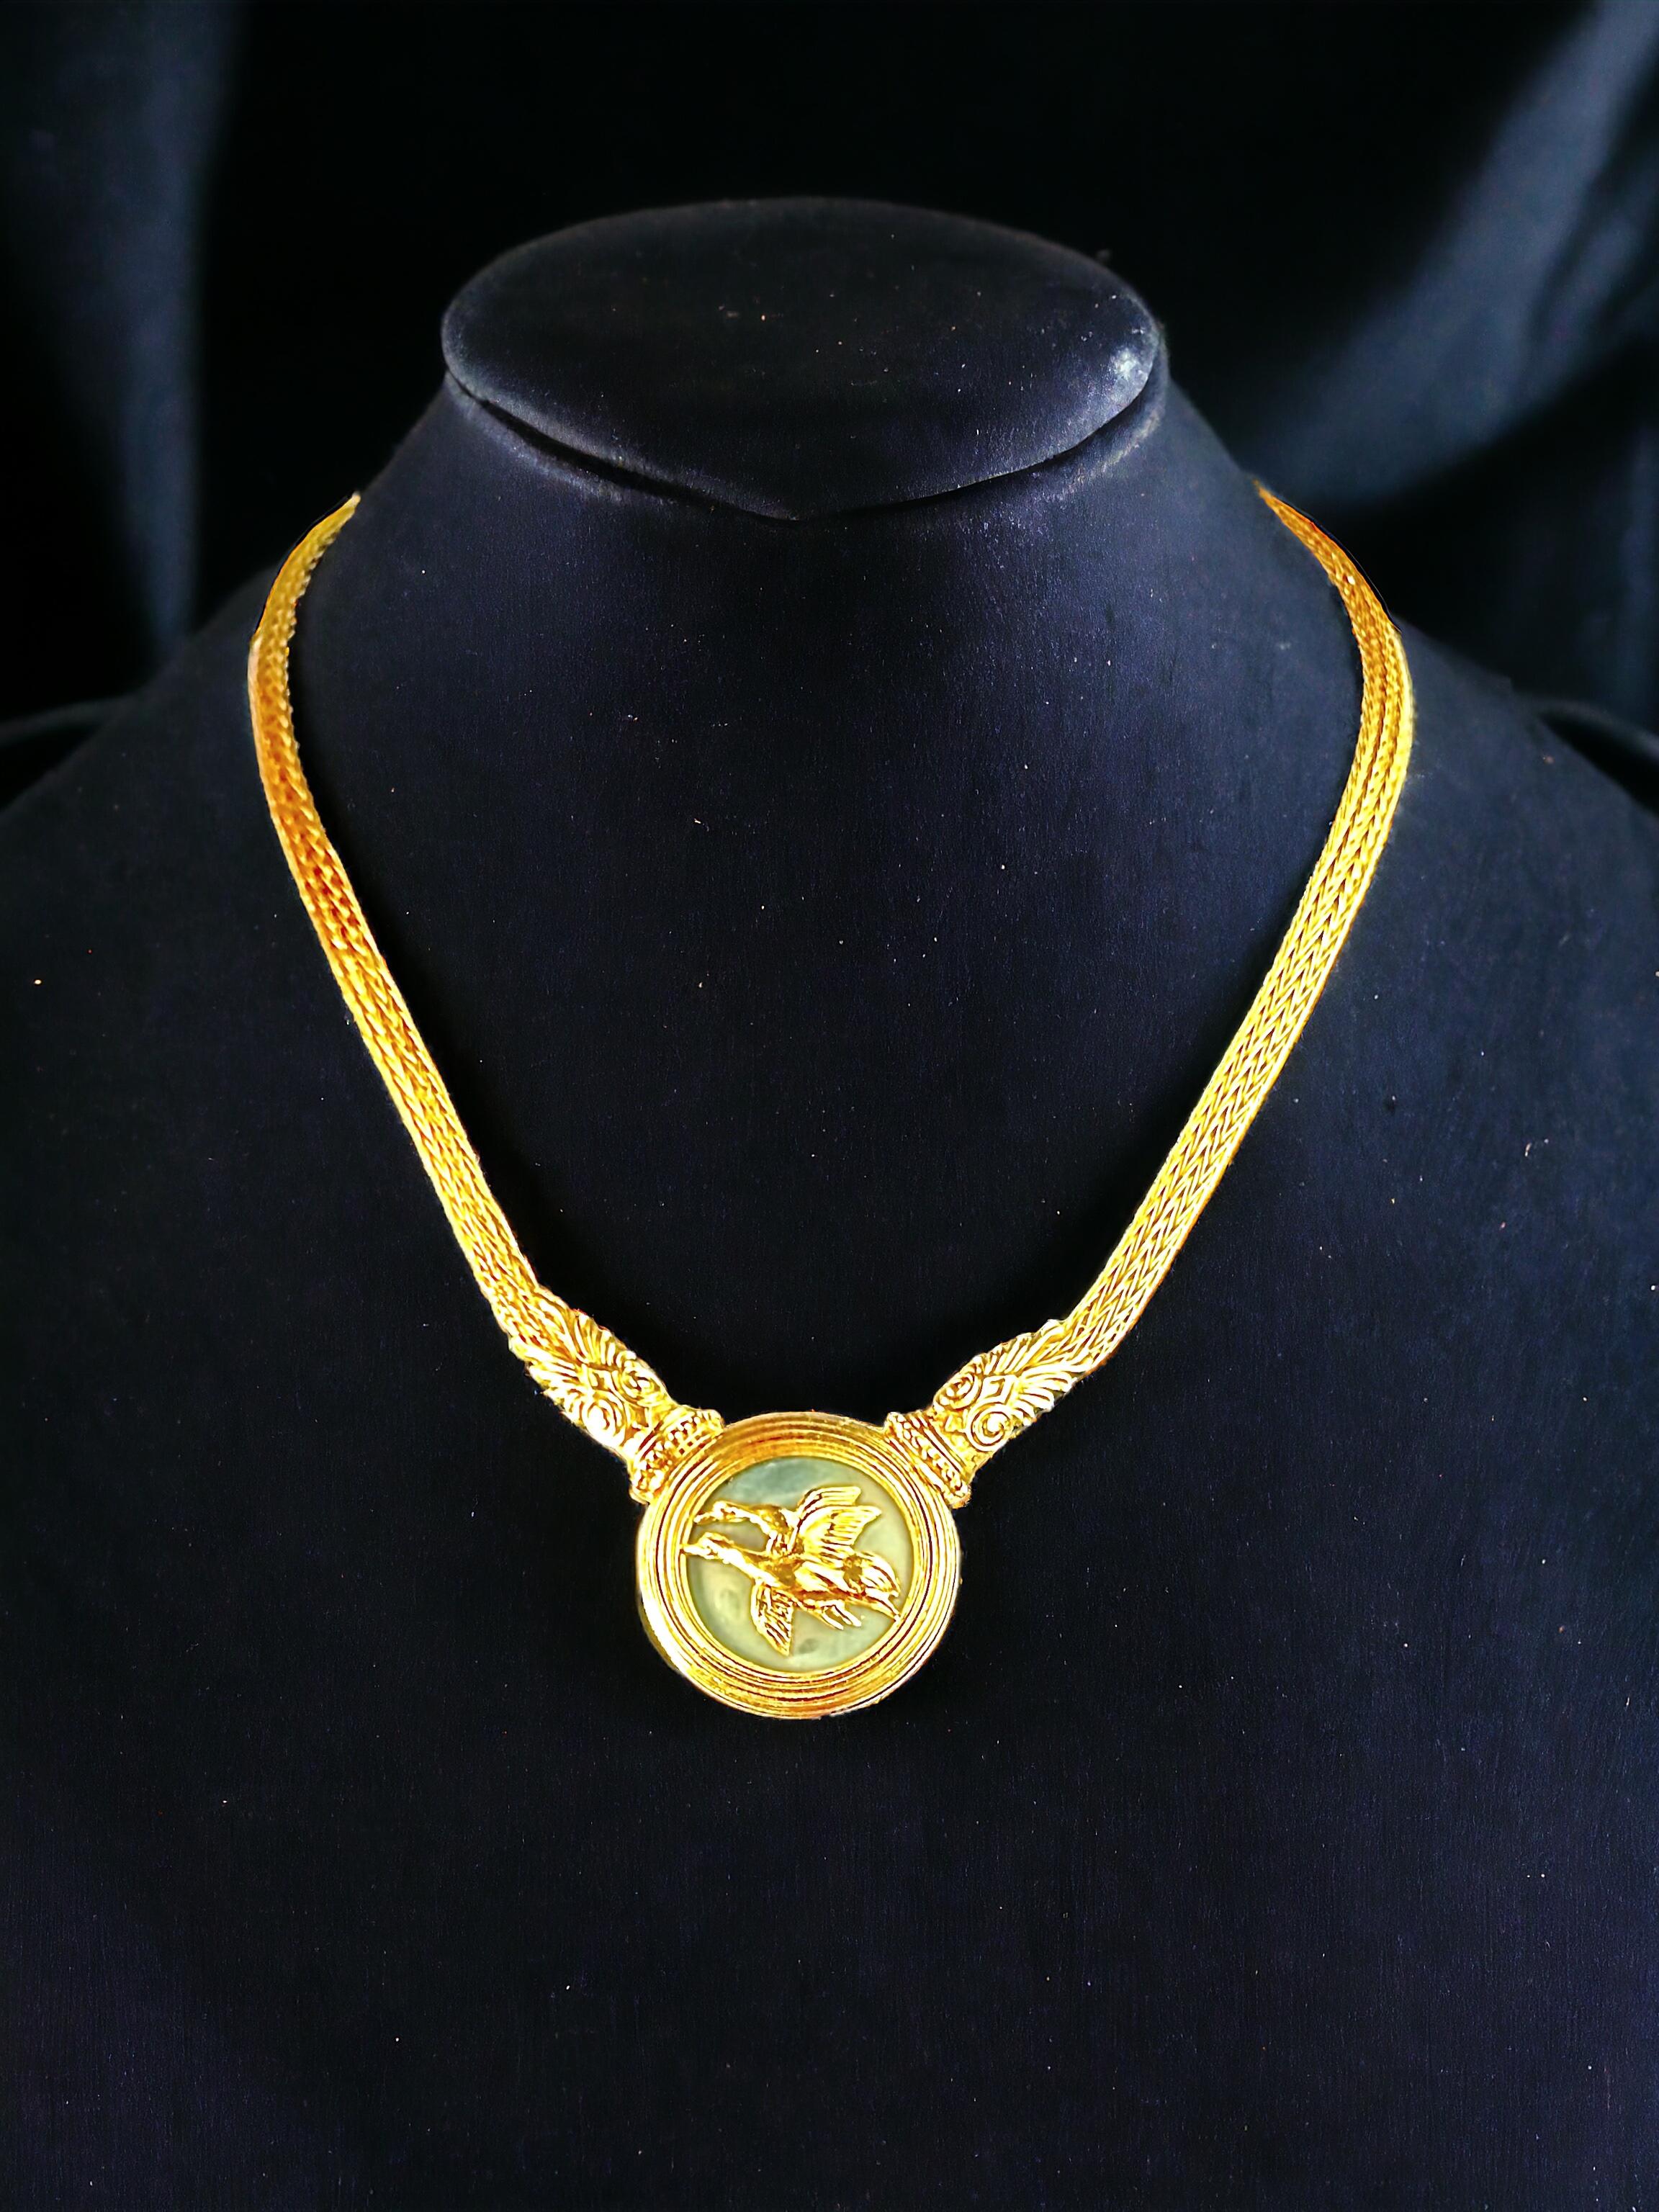 Seltene Vintage-Halskette von  Illias Lalaounis. Dieses meisterhaft aus feinstem 18-karätigem Gelbgold gefertigte Stück verkörpert die zeitlose Kunstfertigkeit der griechischen Schmuckherstellung.

Das Gewicht der Halskette von 49 Gramm zeugt von